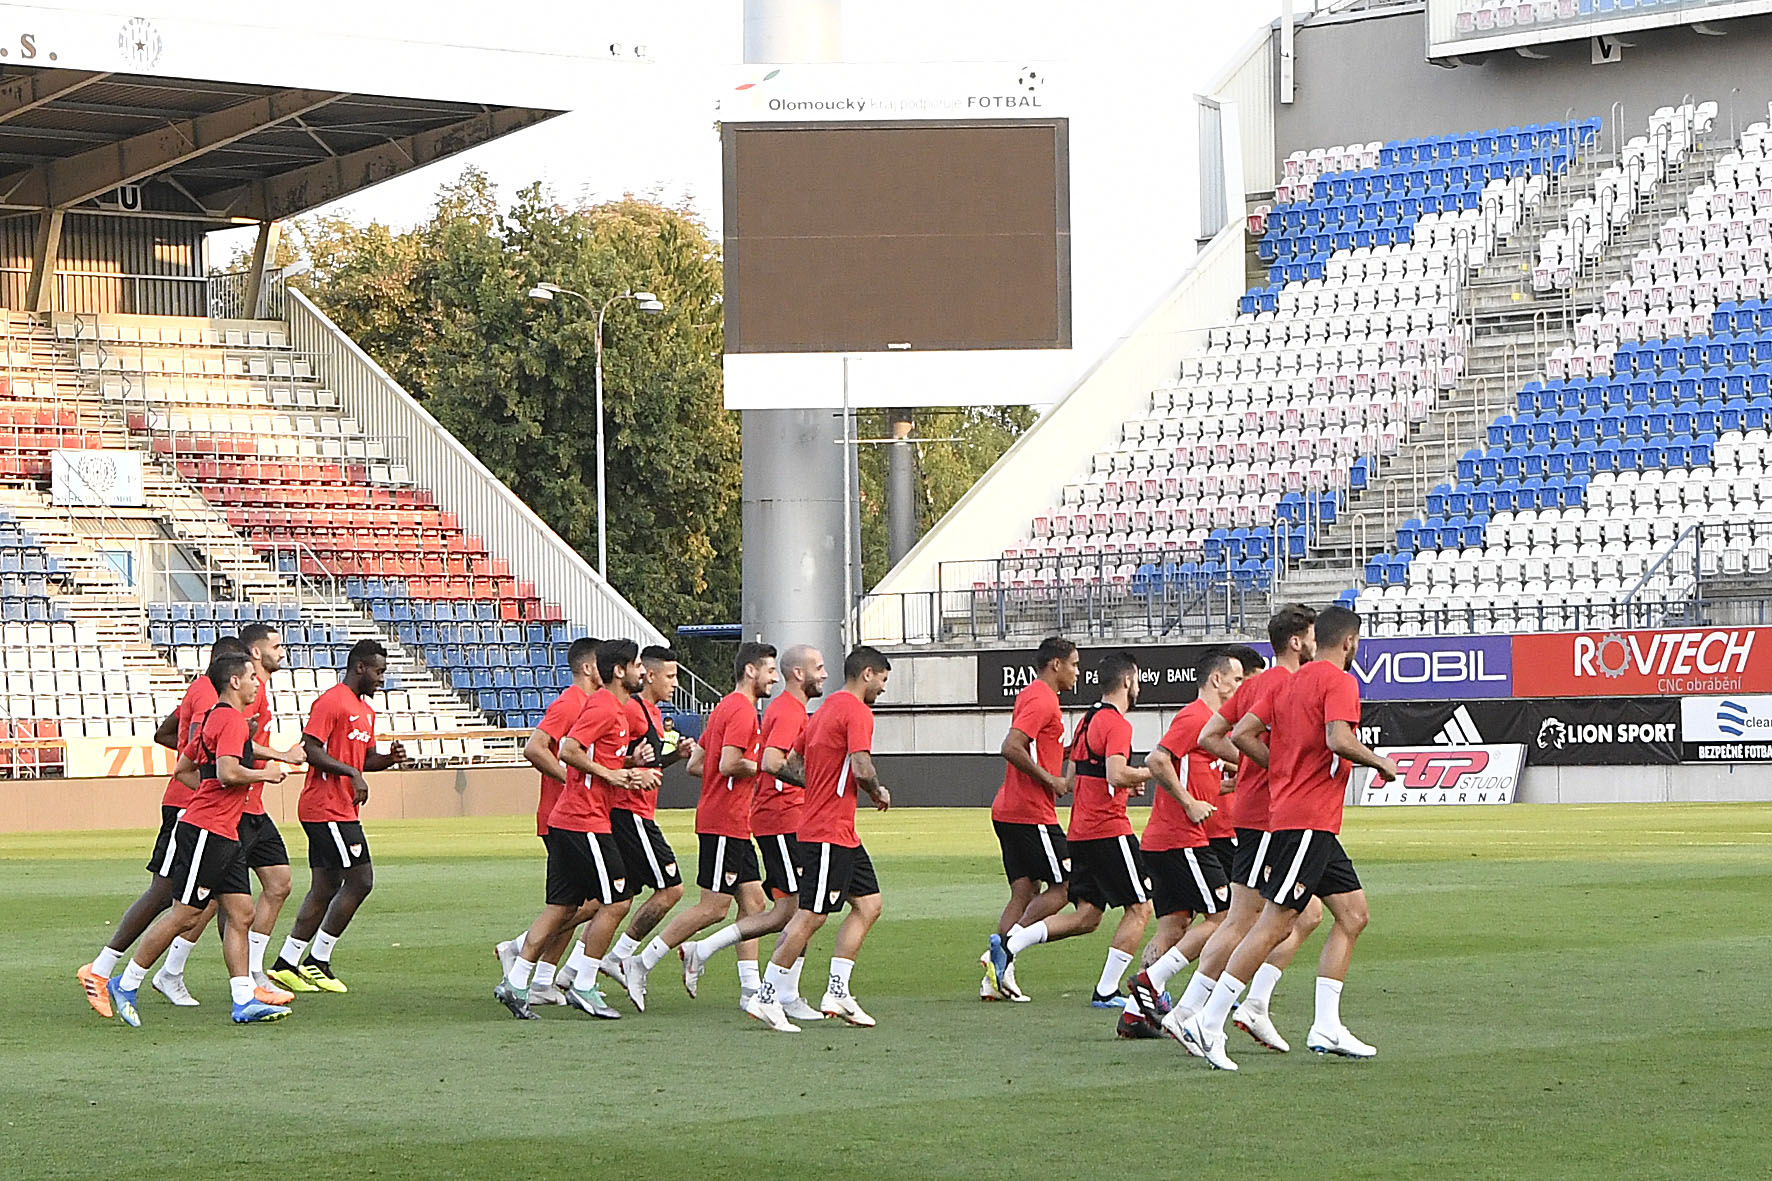 Sevilla training in the Andrúv Stadion